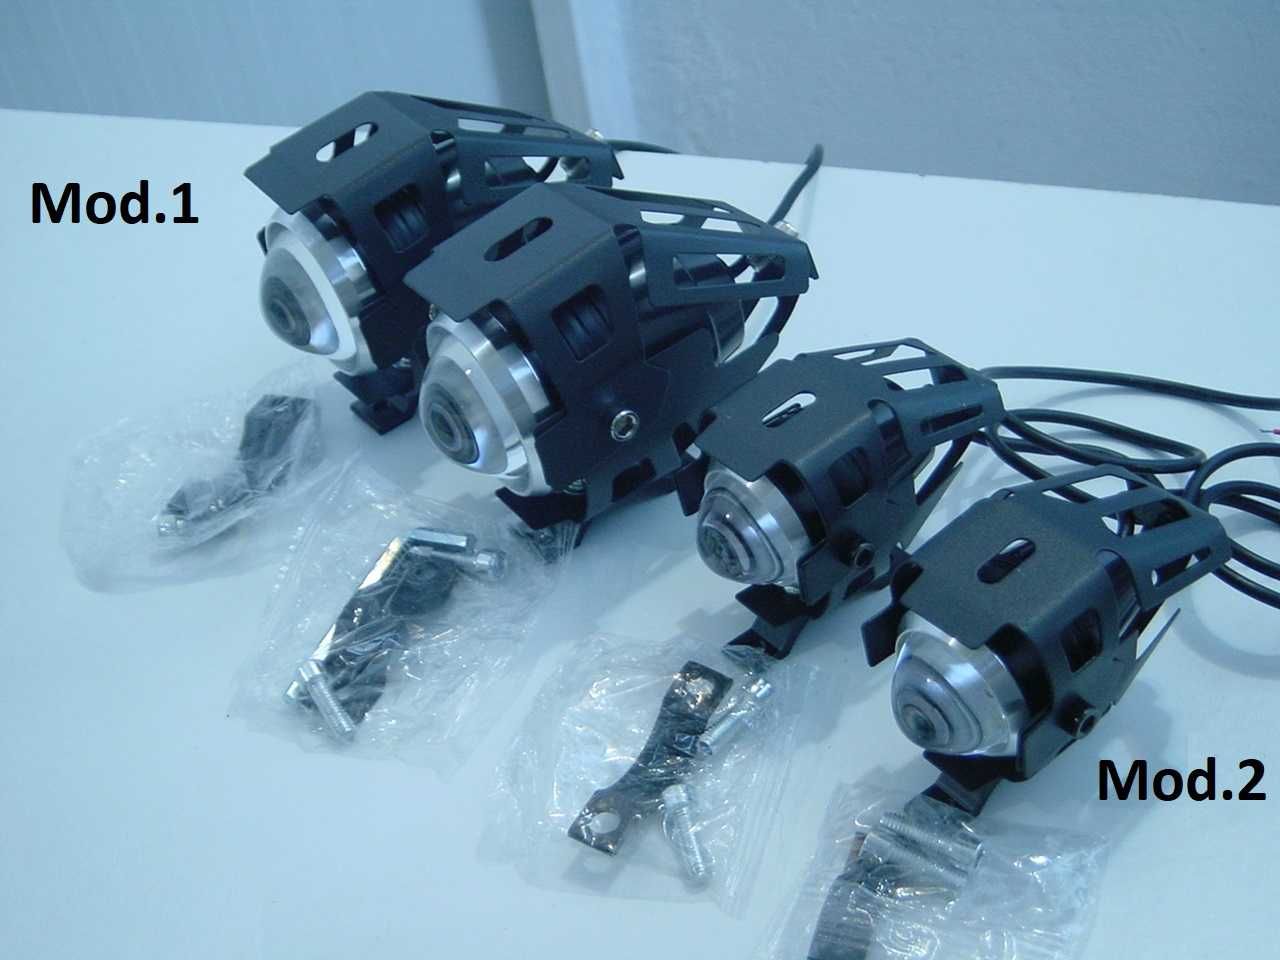 Faróis auxiliares LED com máximo, médio e strobe